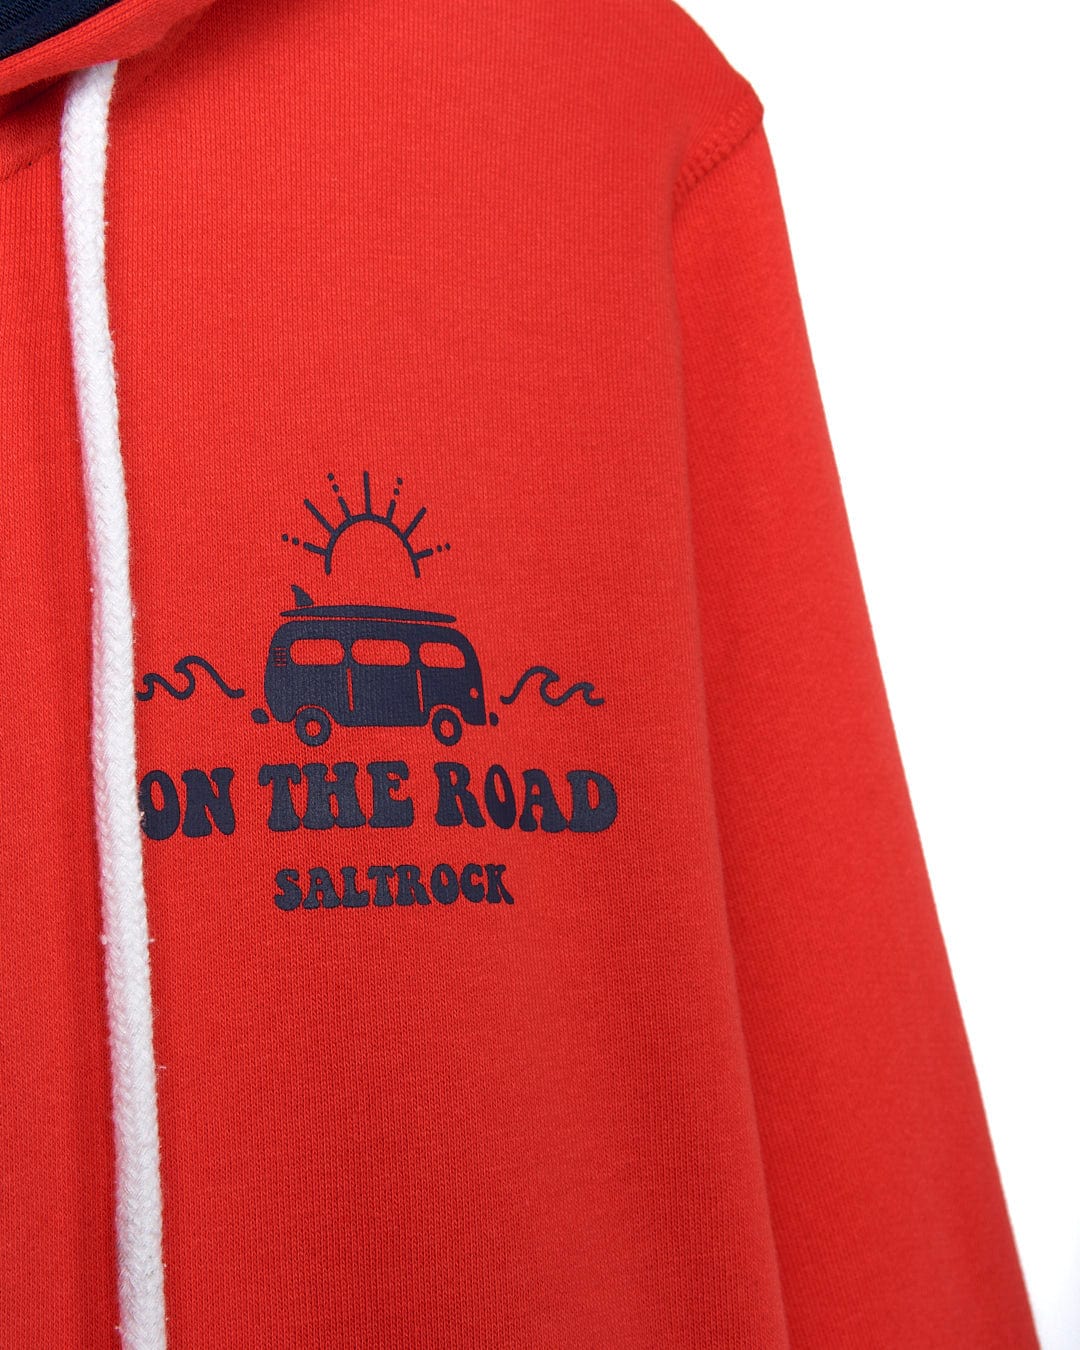 Saltrock - On The Road Womens Zip Hoodie in Red.